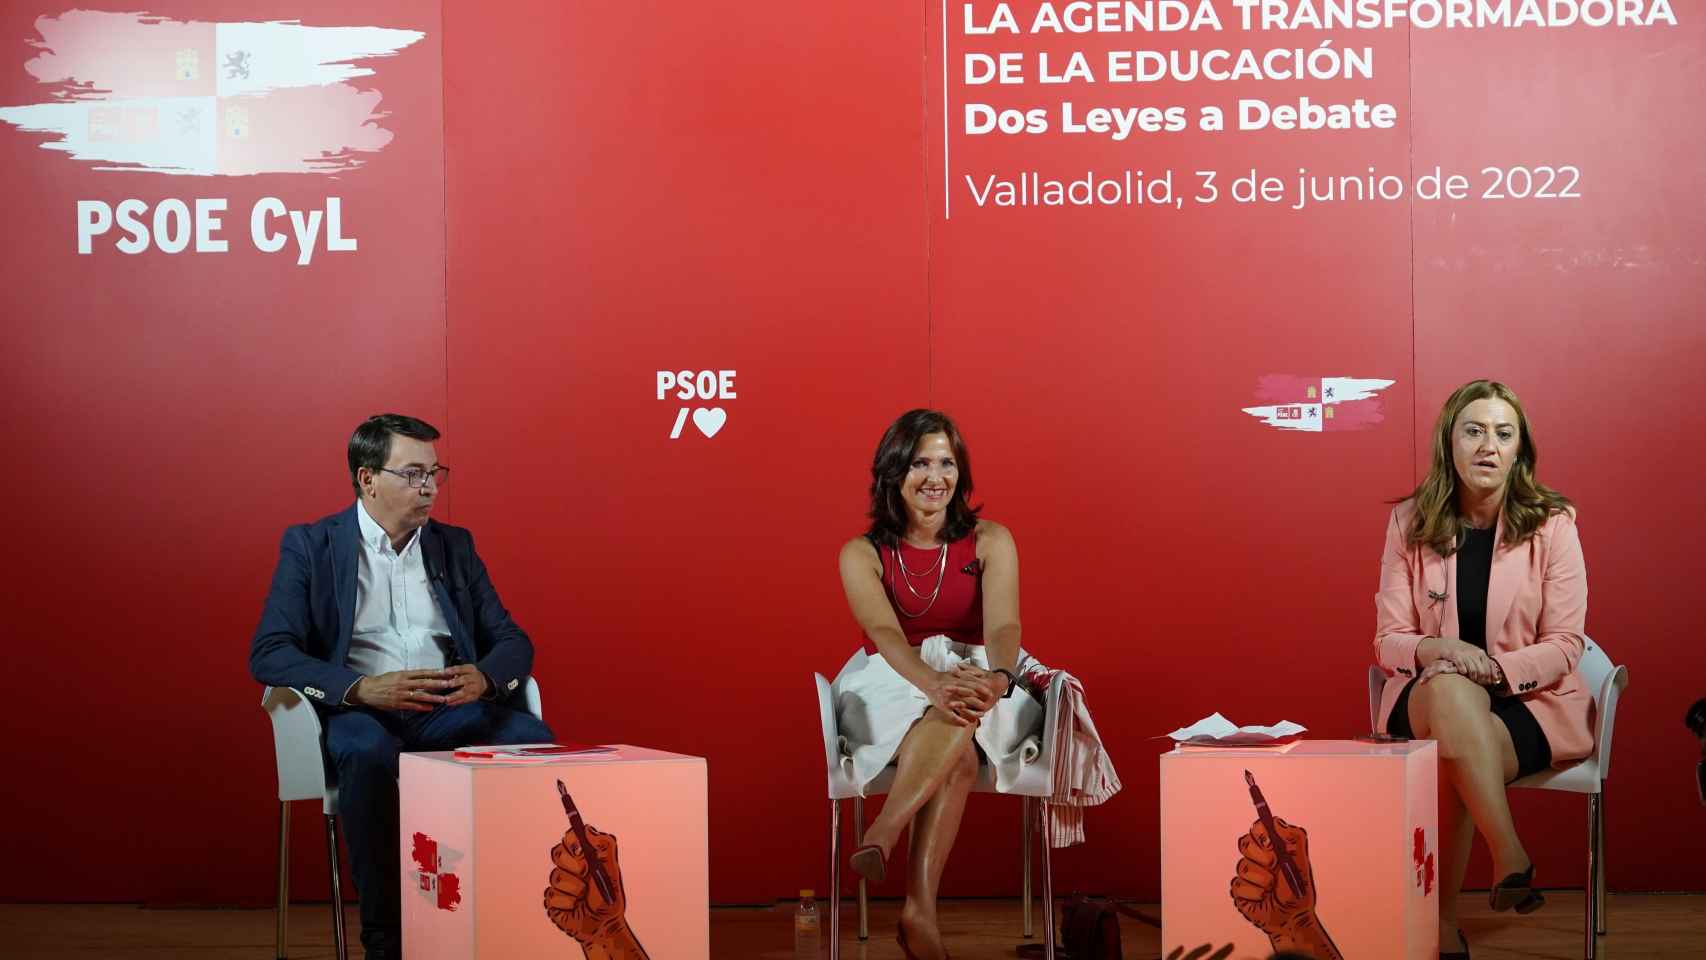 Virginia Barcones, María Luz Martínez Seijo y Fernando Pablos, participan en la jornada de educación